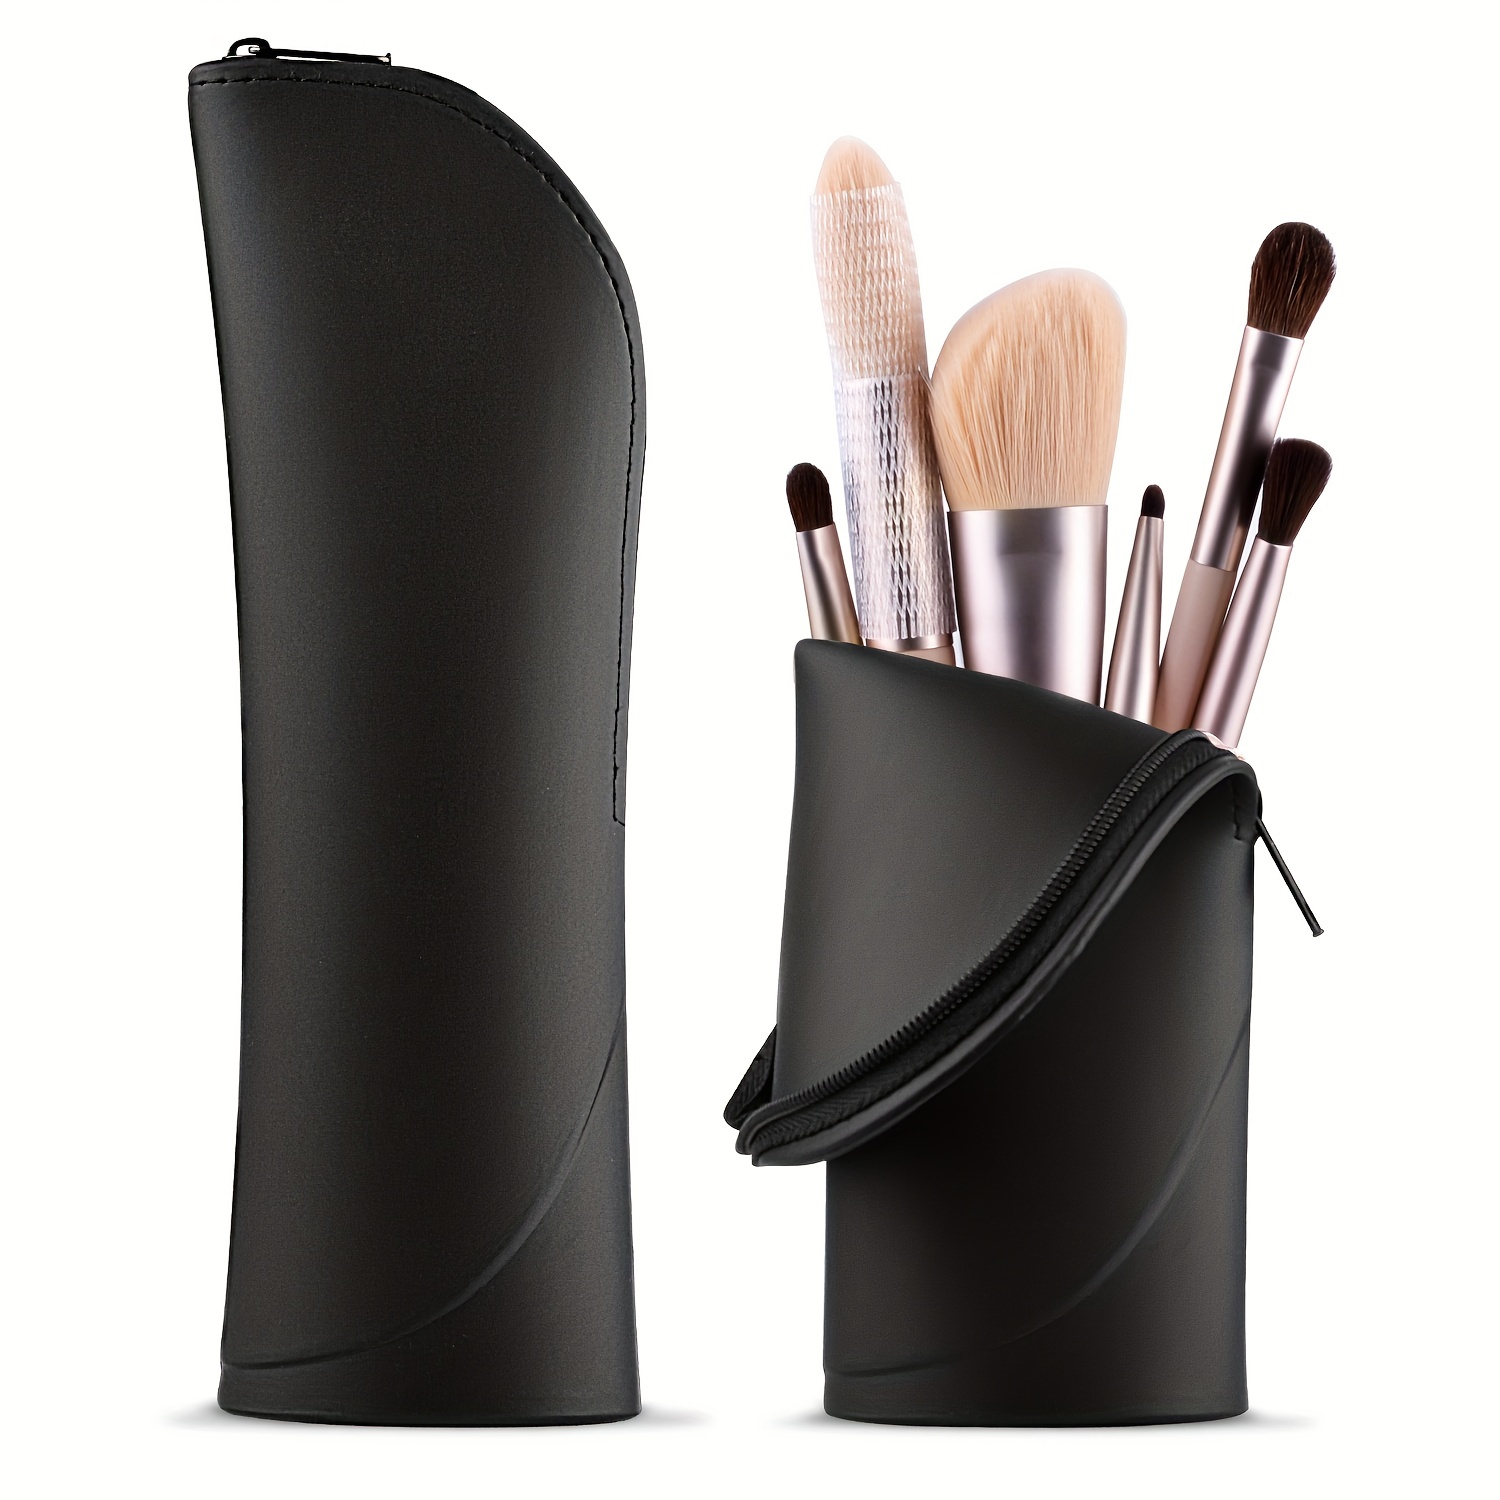 Silicone Makeup Brush Storage Bag Travel Waterproof Dustproof